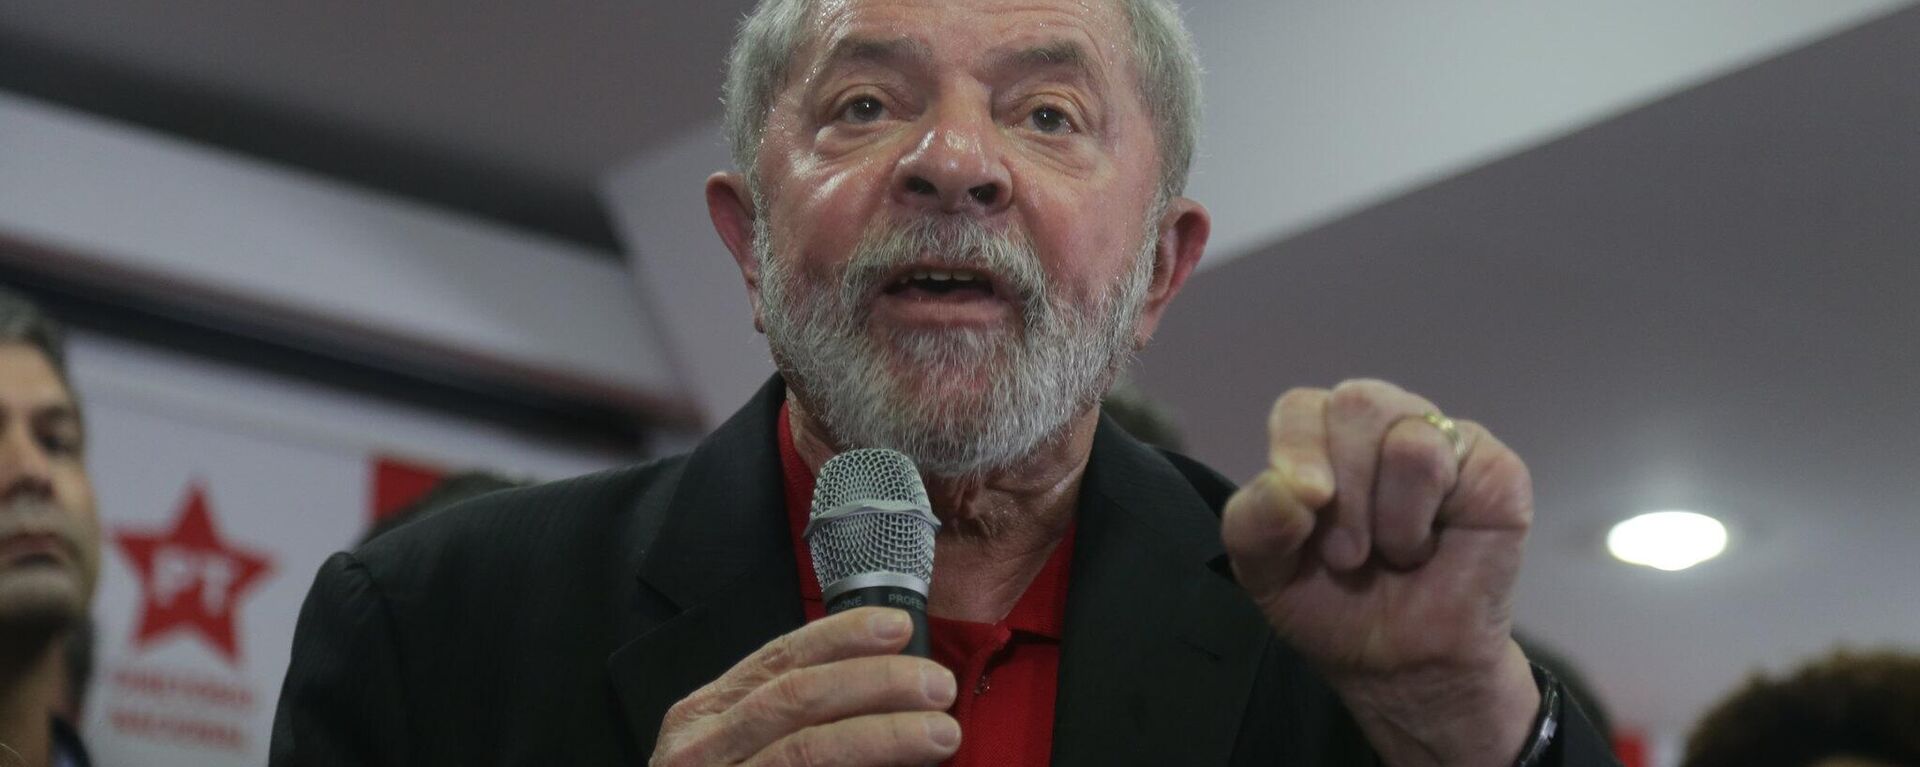 Luiz Inácio Lula da Silva, expresidente brasileño - Sputnik Mundo, 1920, 27.09.2022